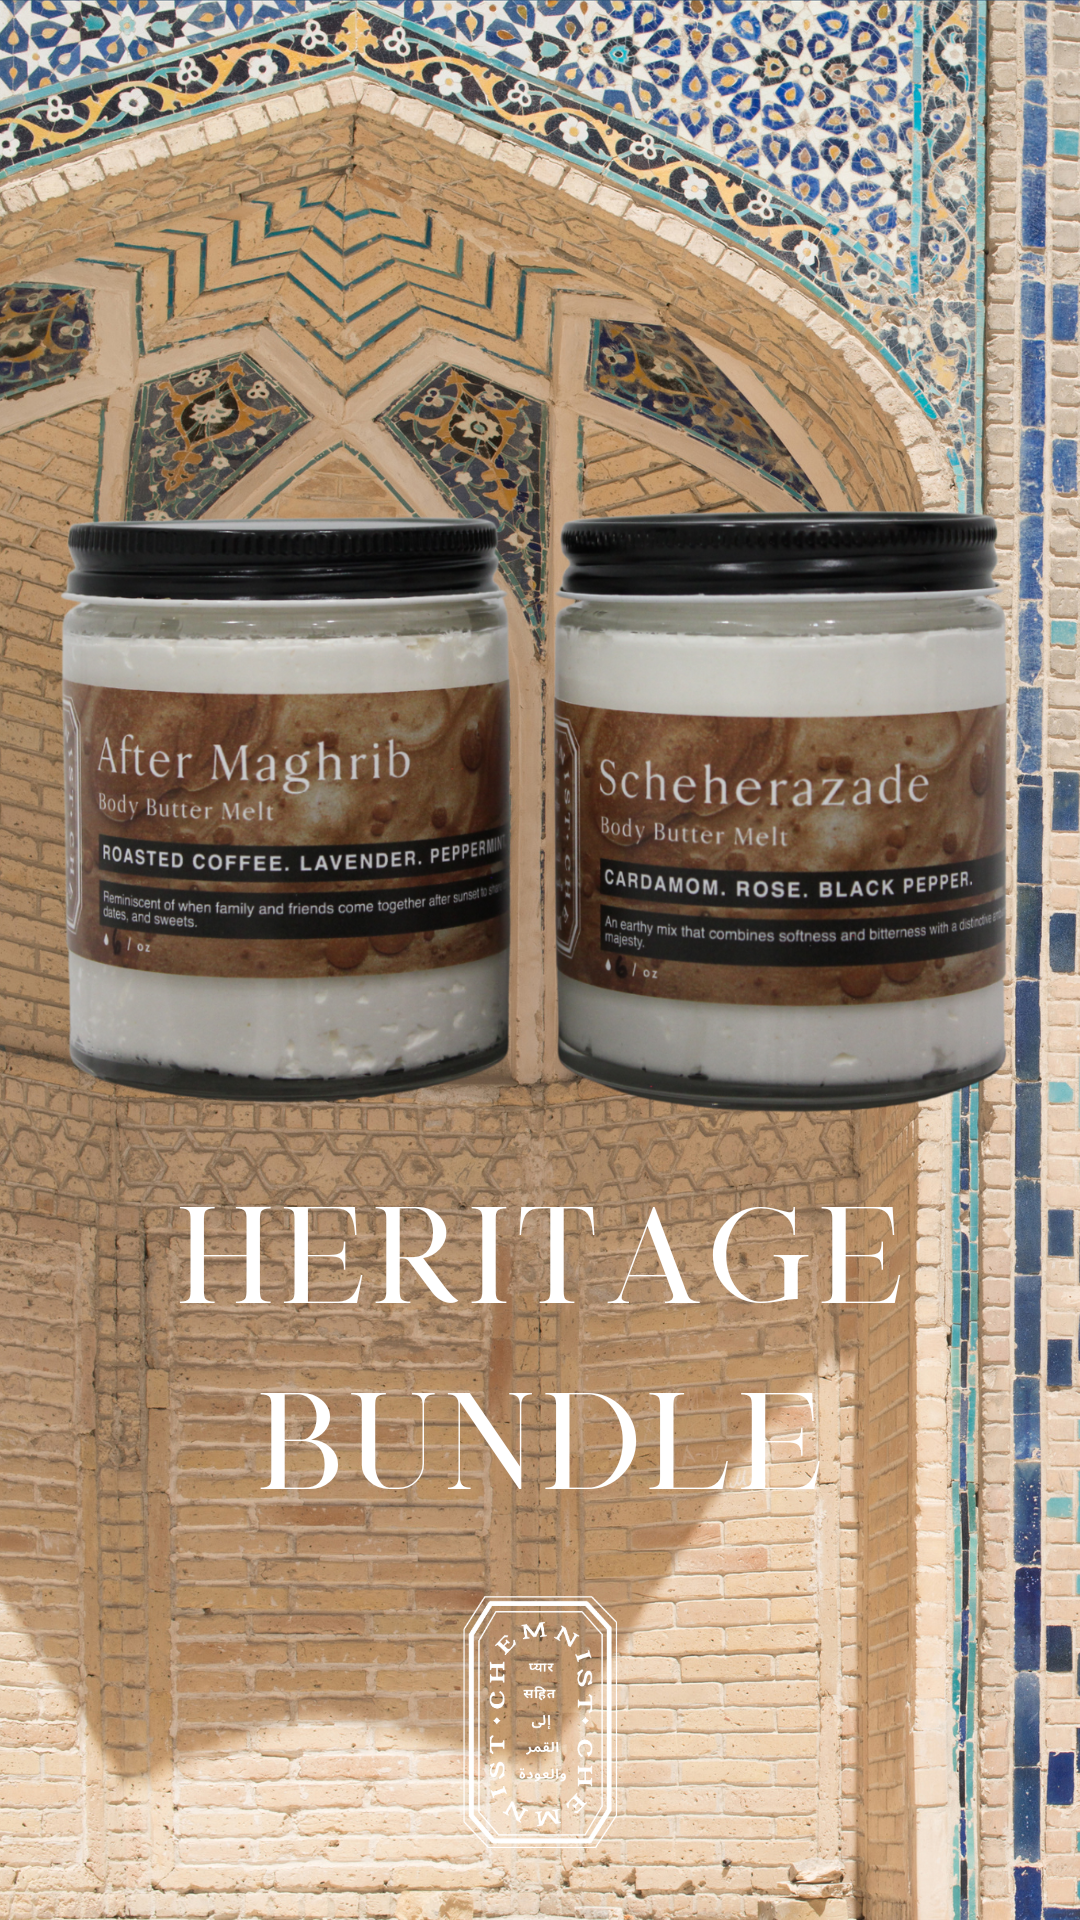 Heritage Bundle Gift Set